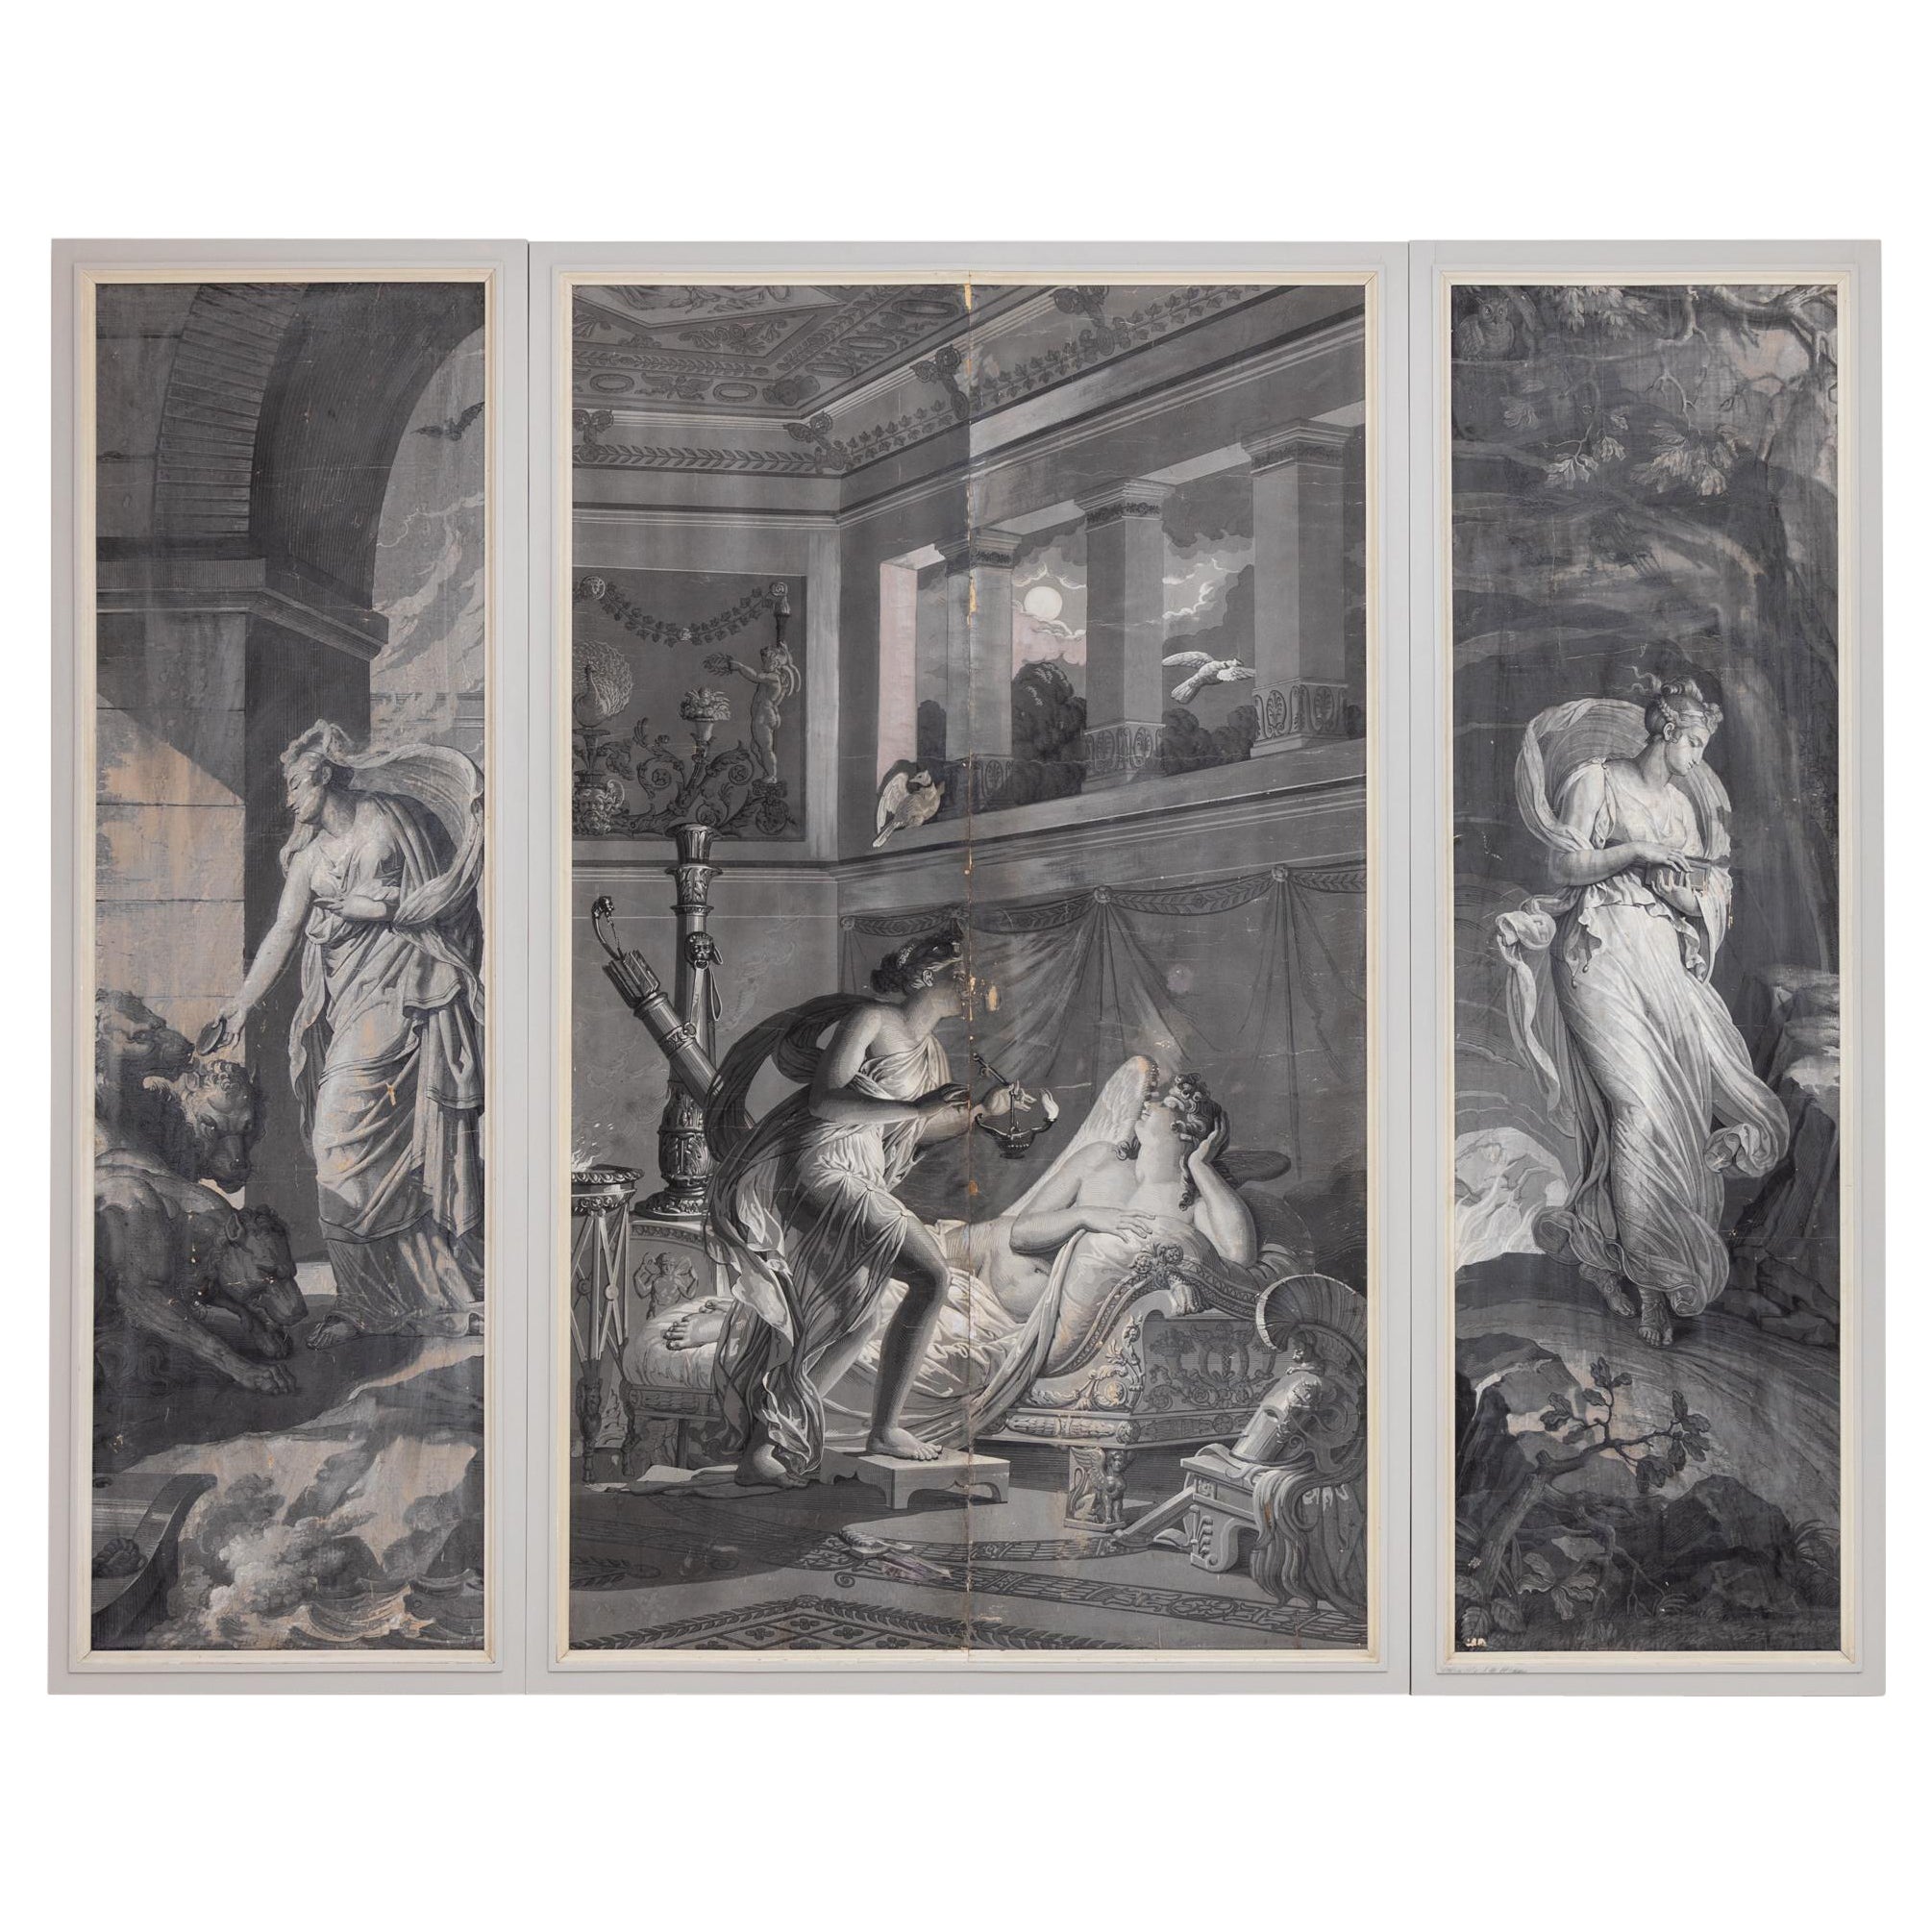 Papier peint Grisaille de la série "Psyche", France, 19ème siècle